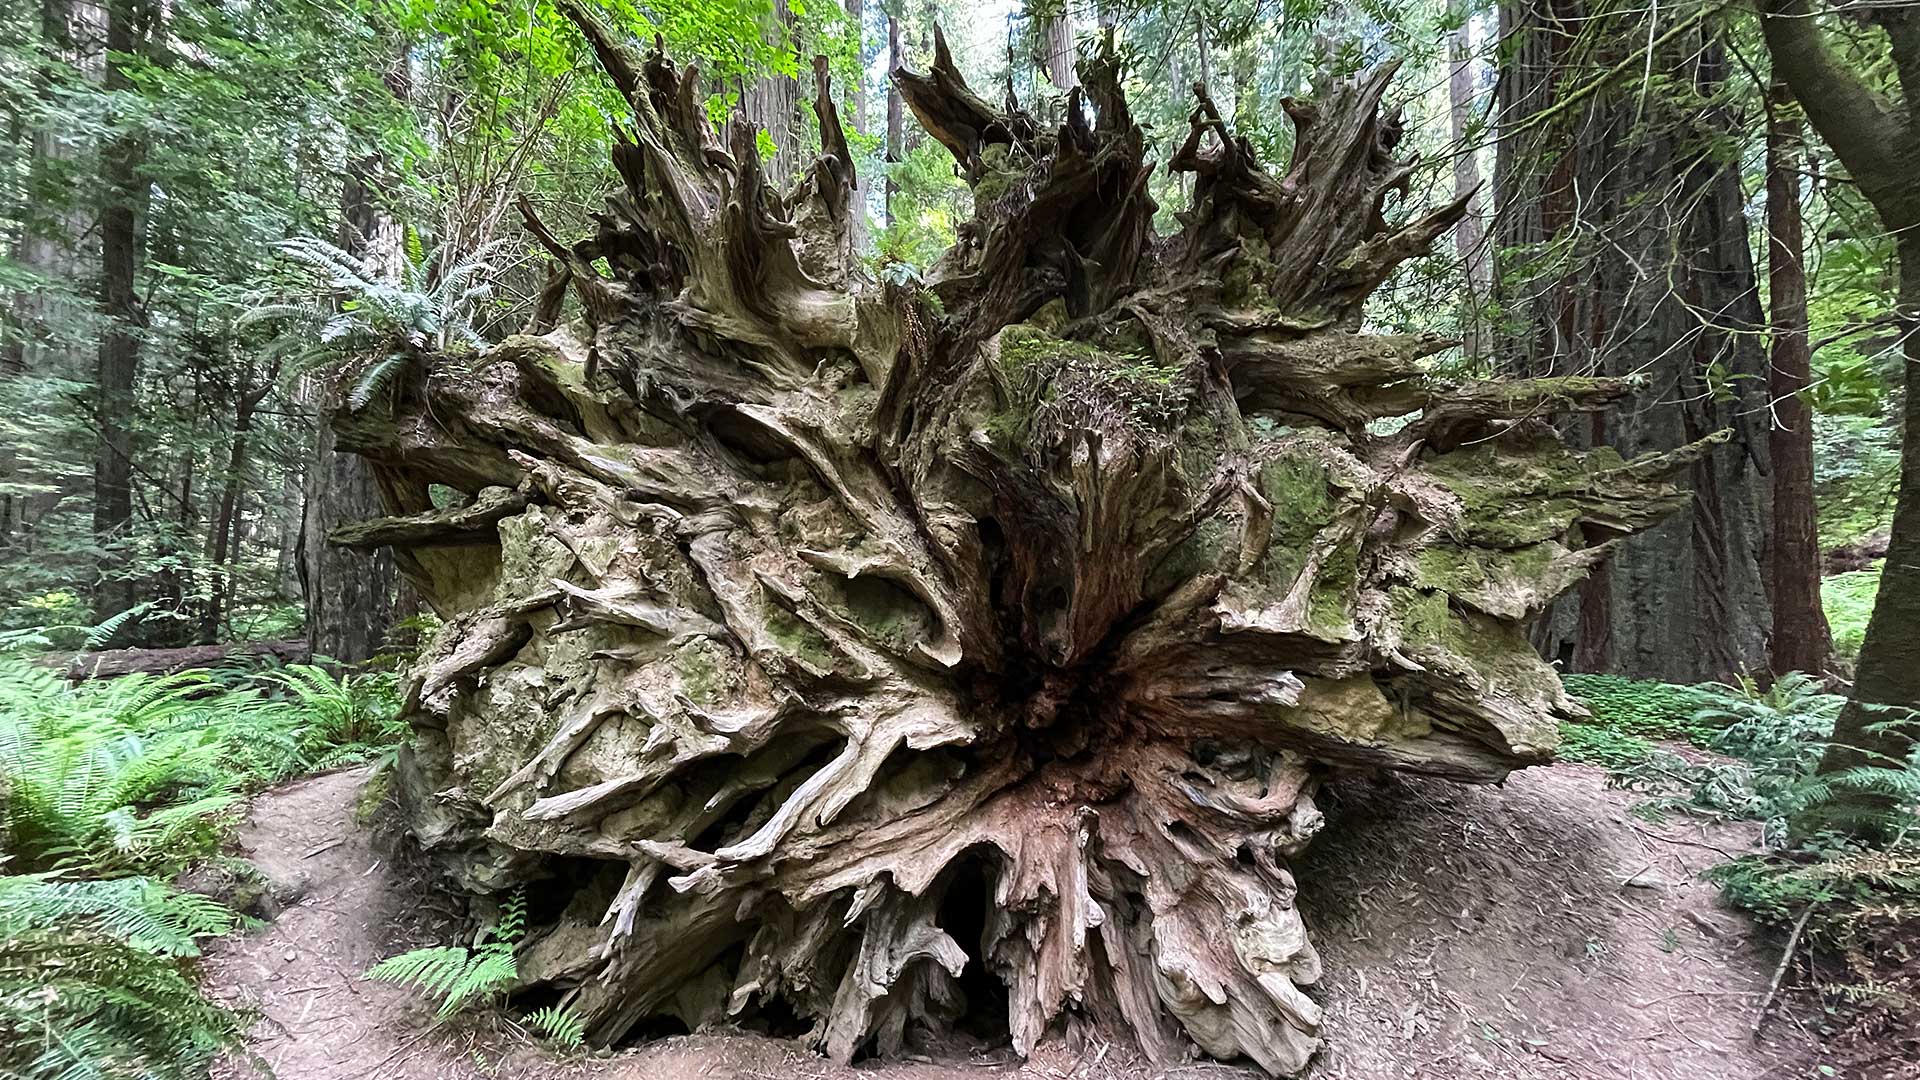 Roots of Fallen Giant Redwood